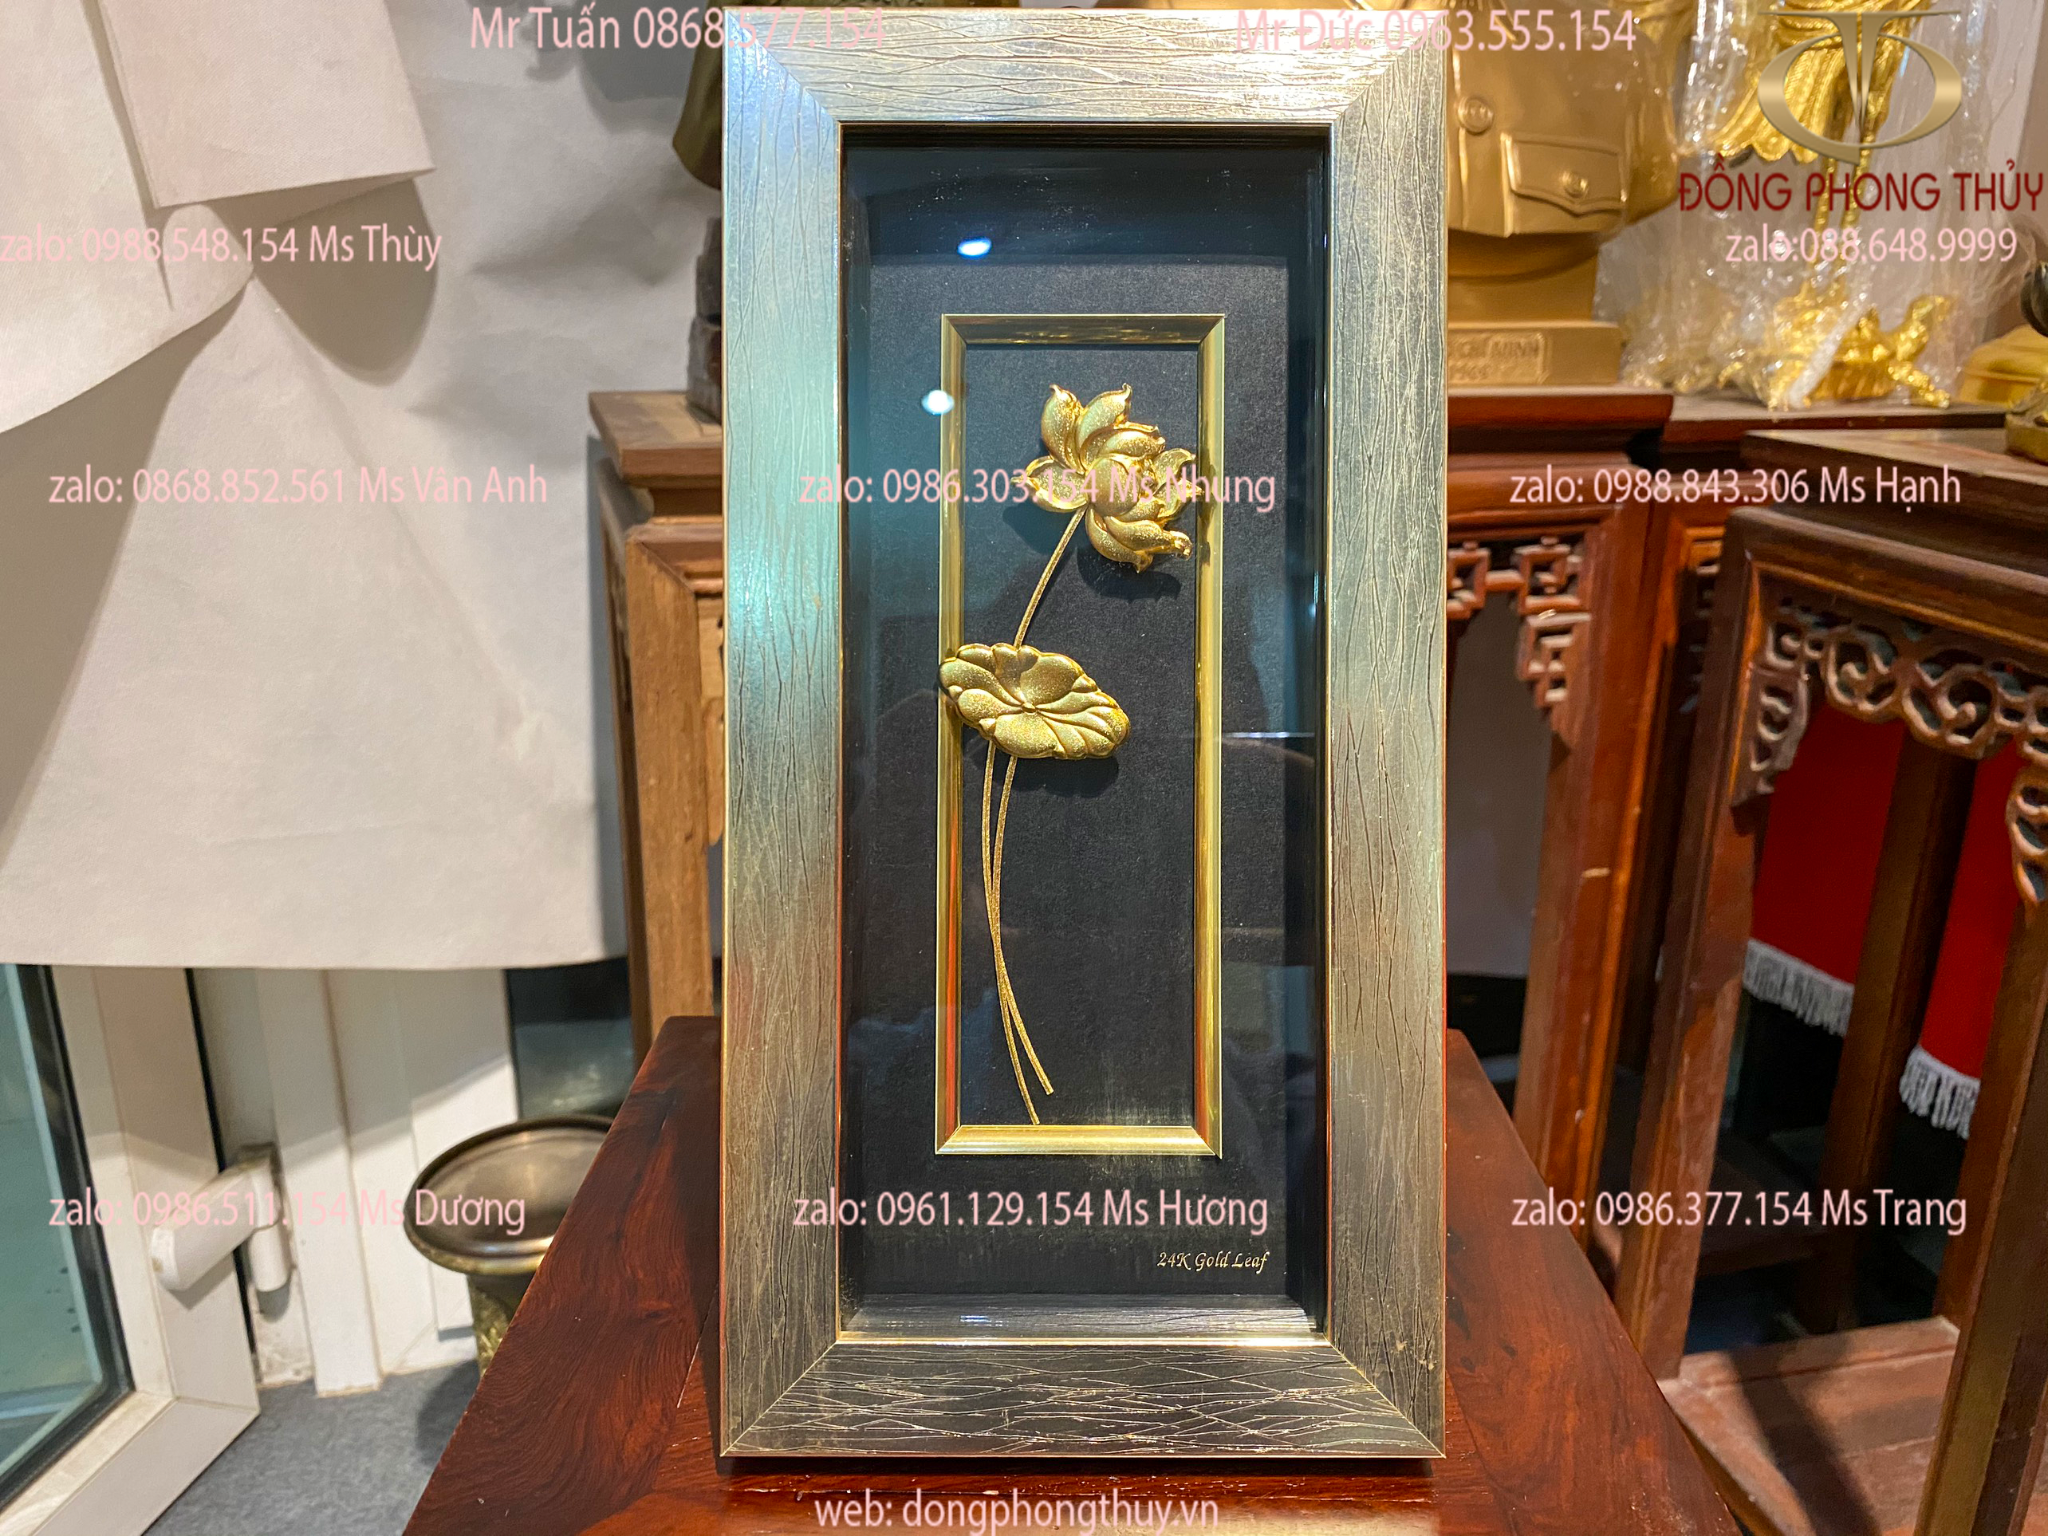 Quà tặng sếp nữ: Tranh hoa sen mạ vàng 24k để bàn